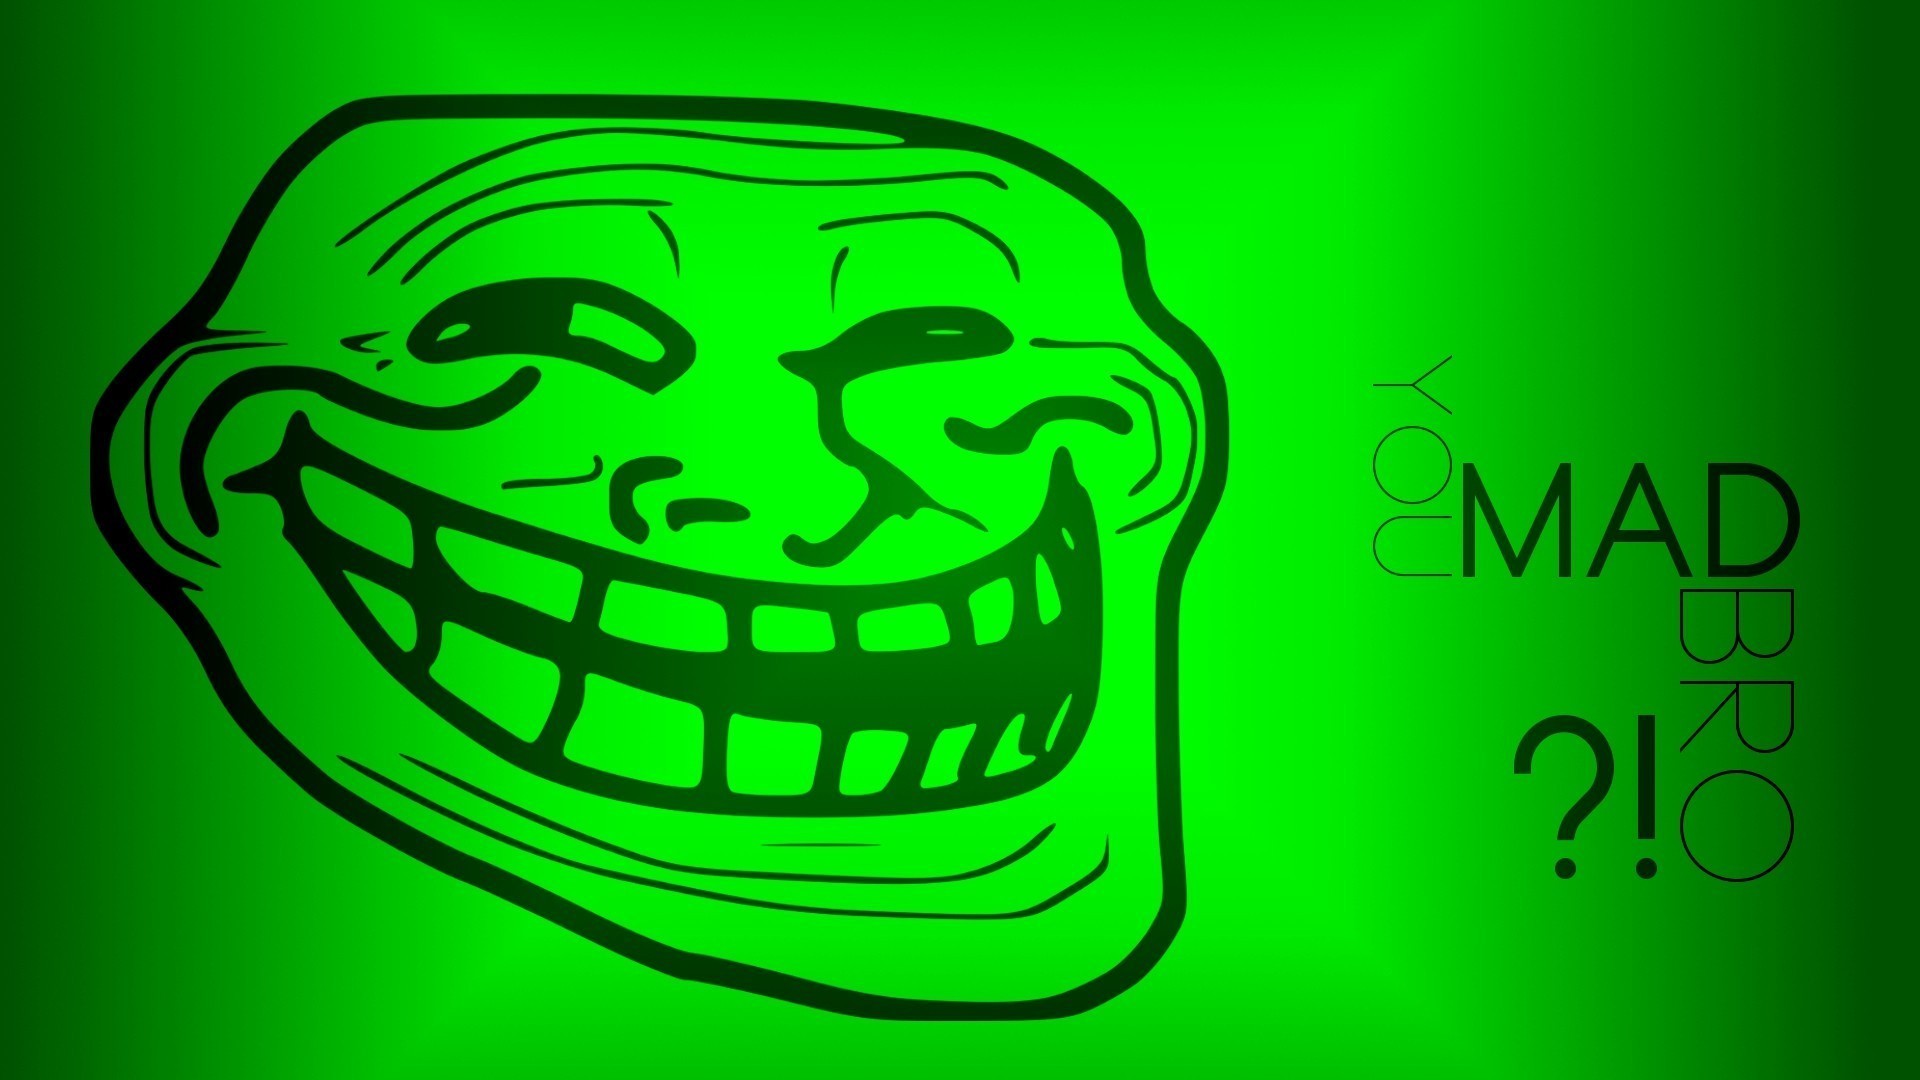 1920x1080 Internet funny green trollface wallpaper